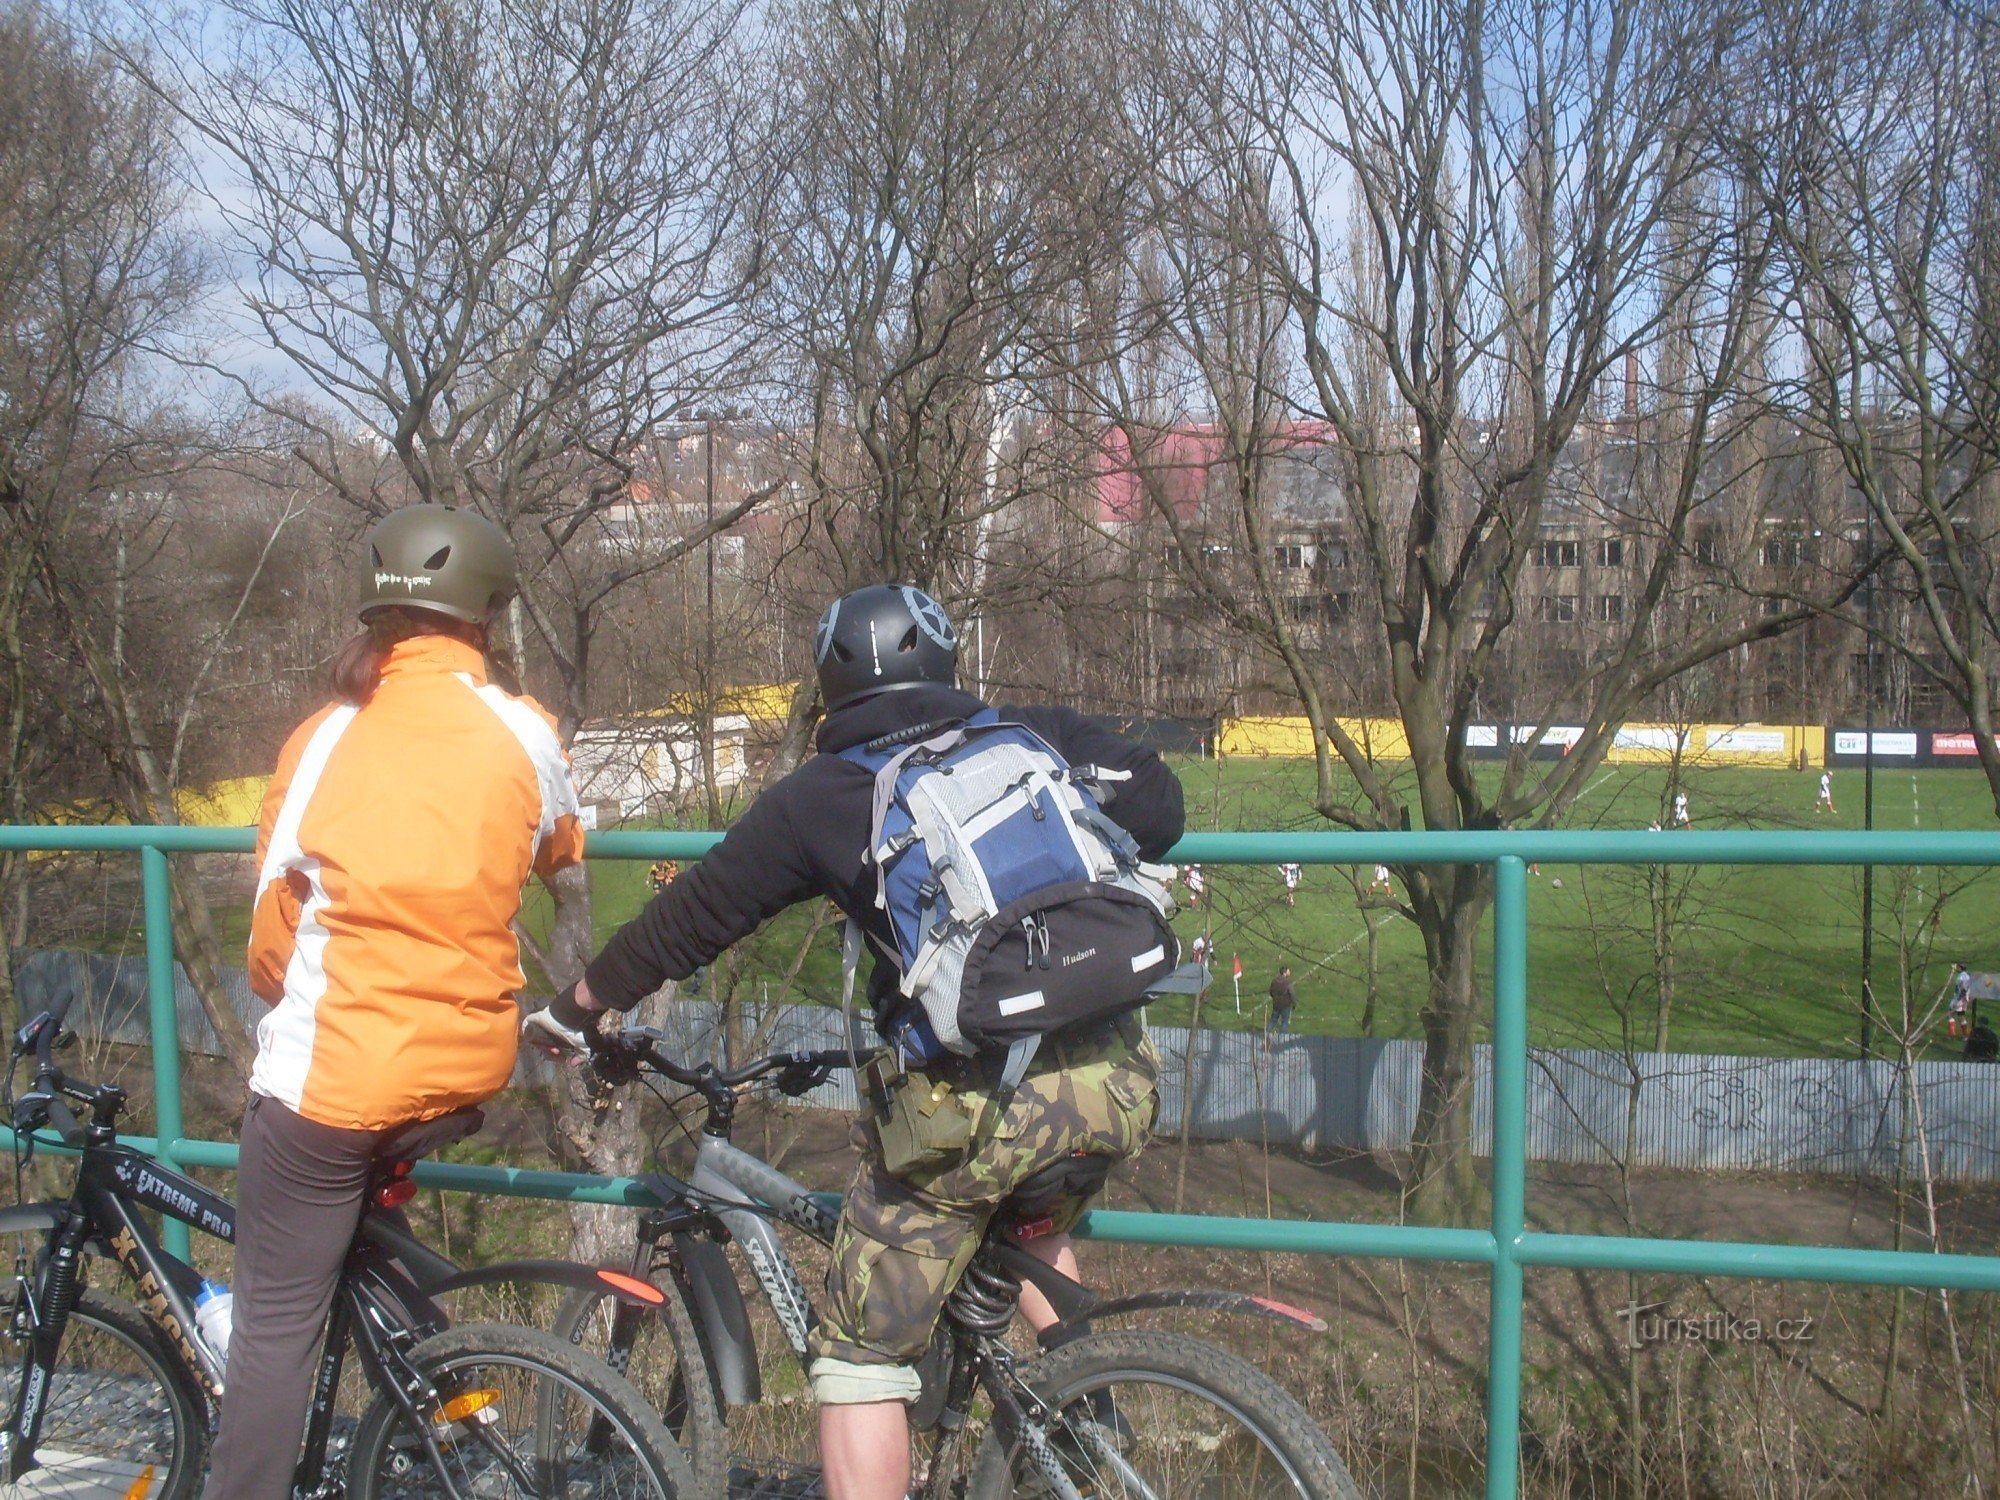 Du kan også se kampen med en squishy bold fra cykelstien, der fører langs den gamle jernbane